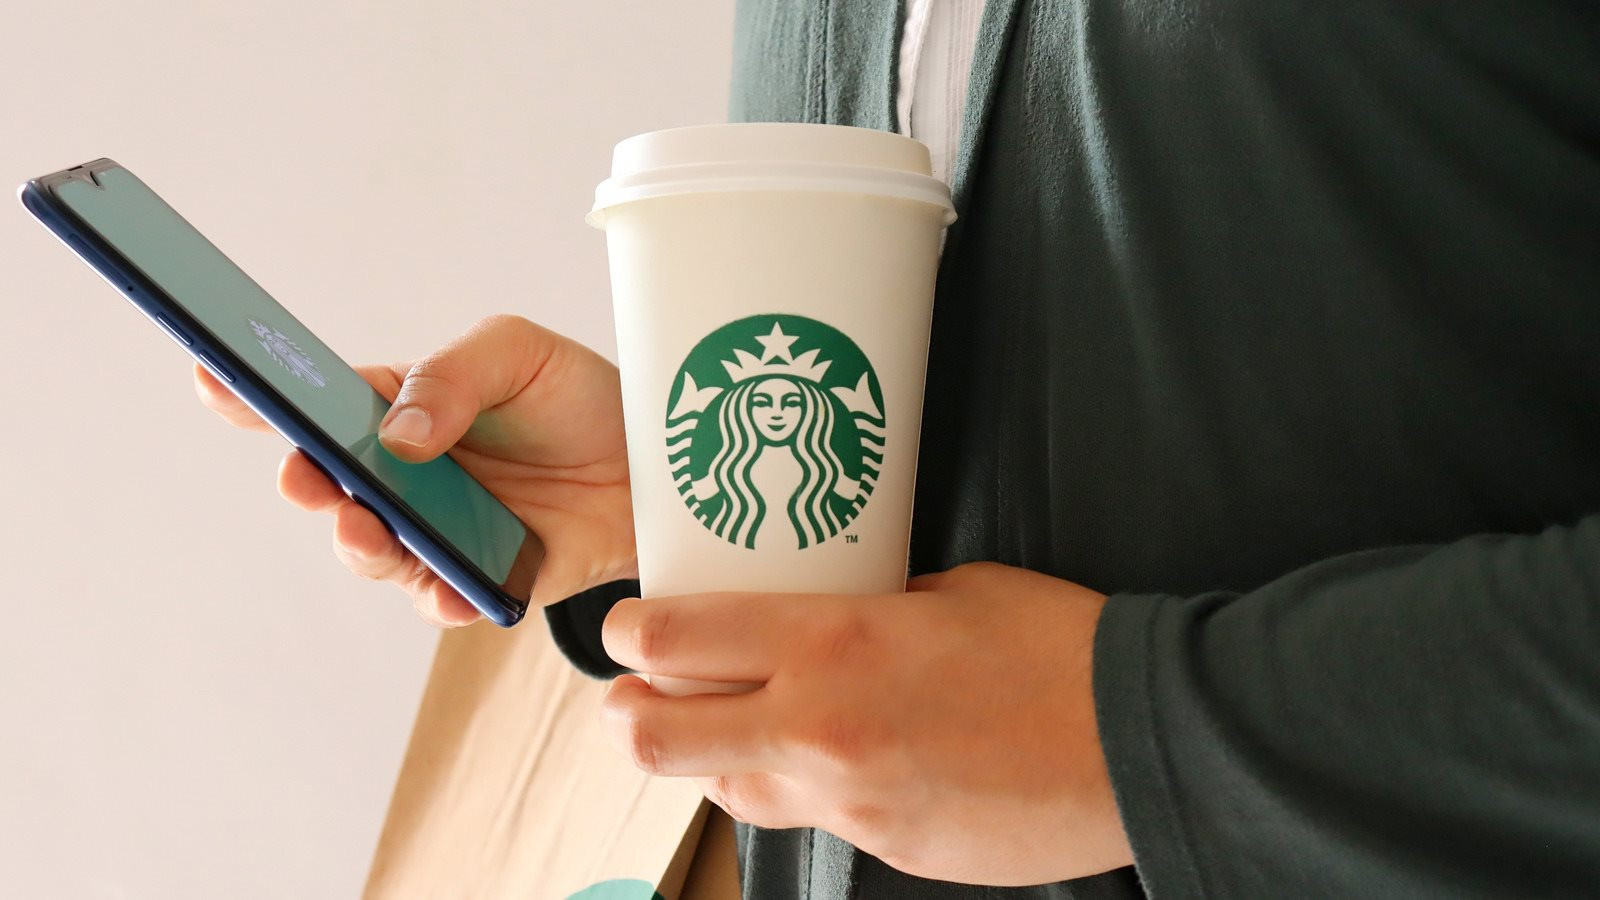 Kế hoạch khiến đối thủ 'sợ' Starbucks: Mở 2.000 cửa hàng mới, giảm thời gian pha chế từ 87 giây còn 36 giây - Ảnh 6.